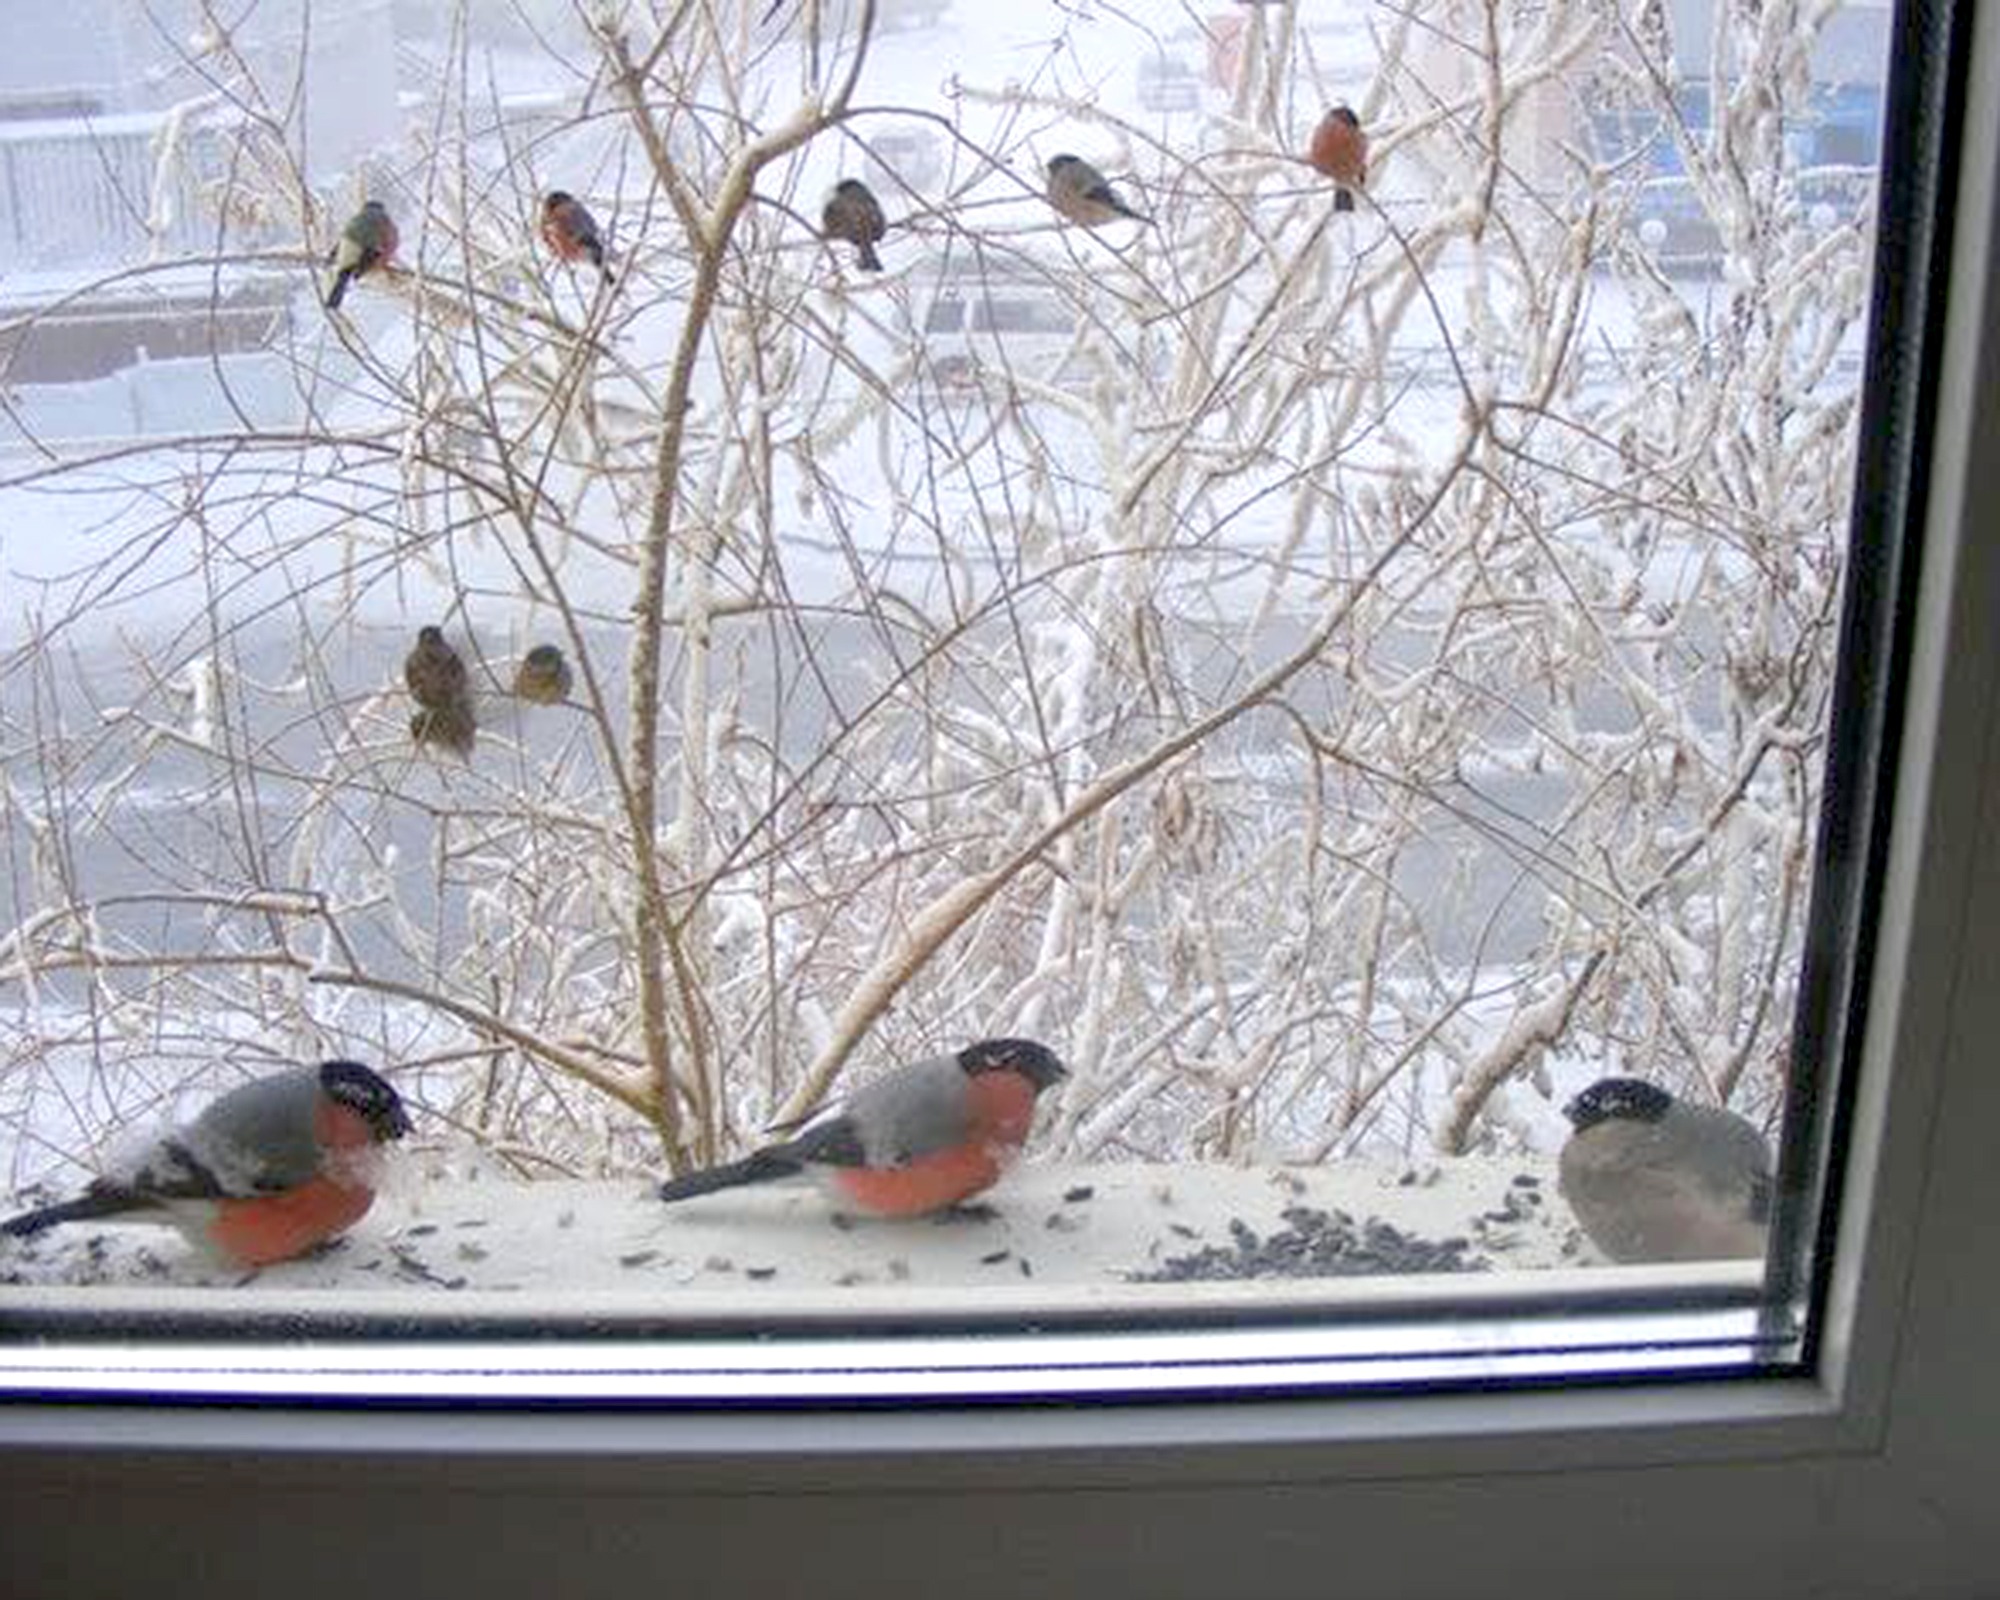 Синица на подоконнике. Птица на подоконнике. Птички за окном зимой. Птицы зимой за окном. Птицы на подоконнике зимой.